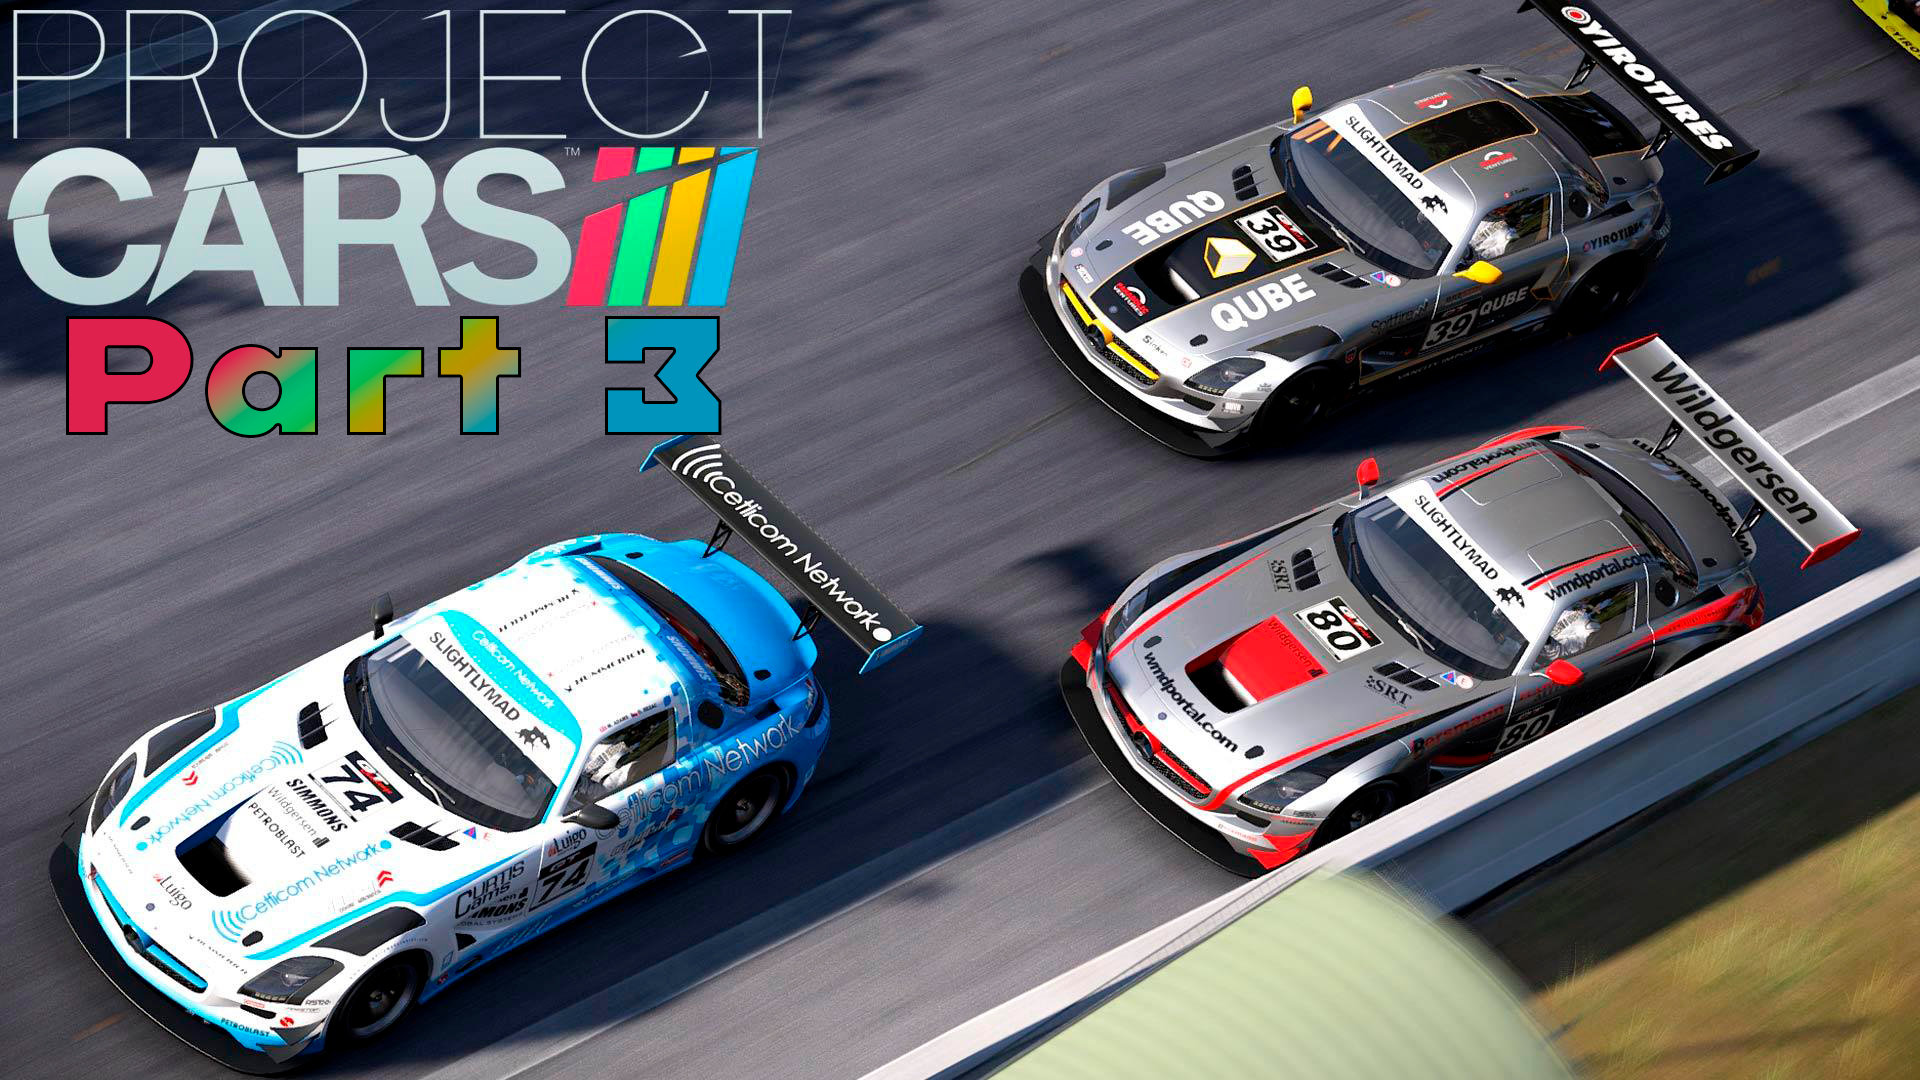 Прохождение Project CARS (Часть 3) Картинг #projectcars #SimRacing  #gametour  #2015 #karting